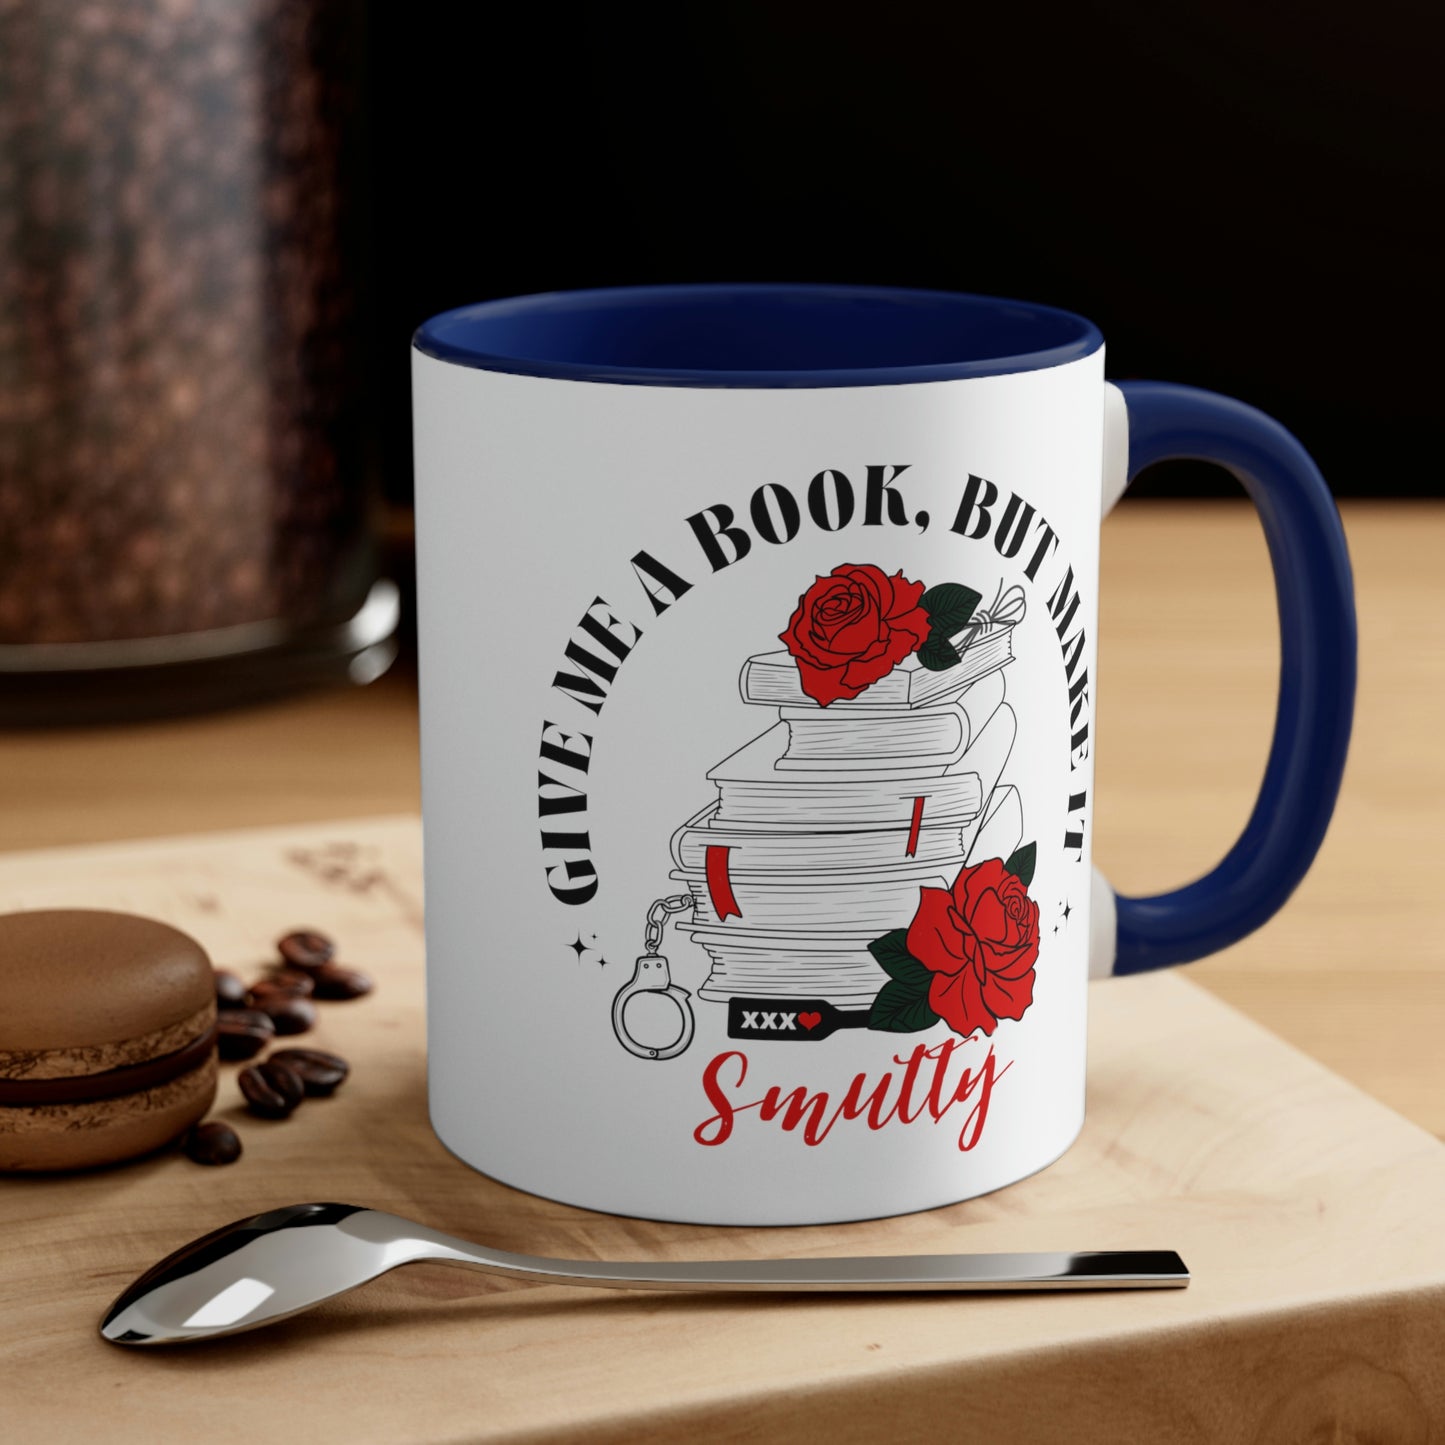 Make it smutty mug